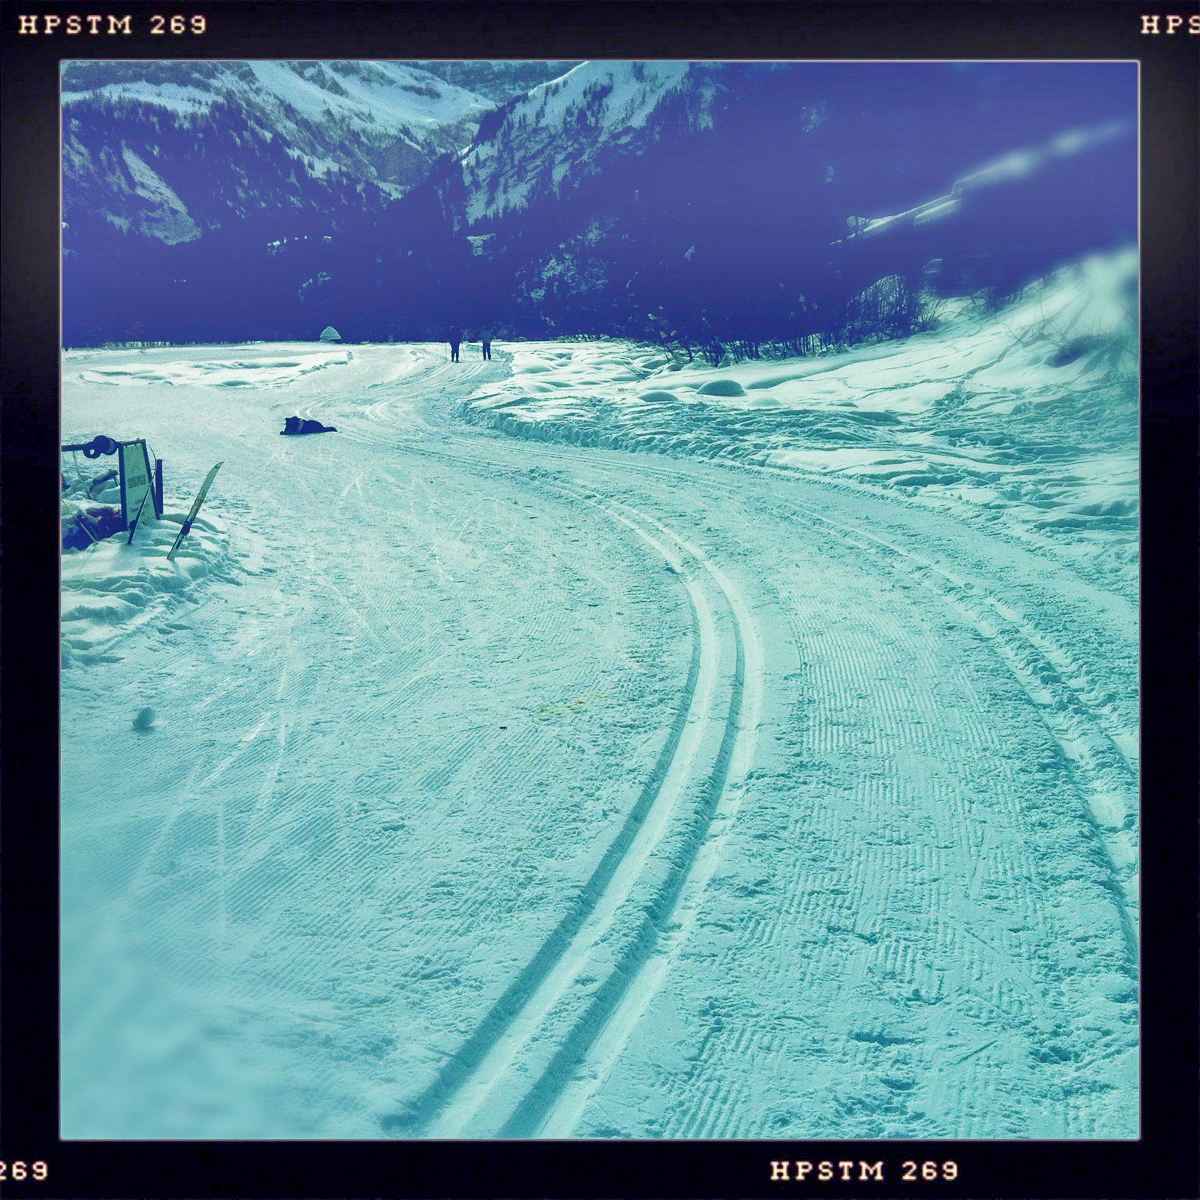 Loipen im Wintersportgebiet von Gstaad im Berner Oberland in der Schweiz